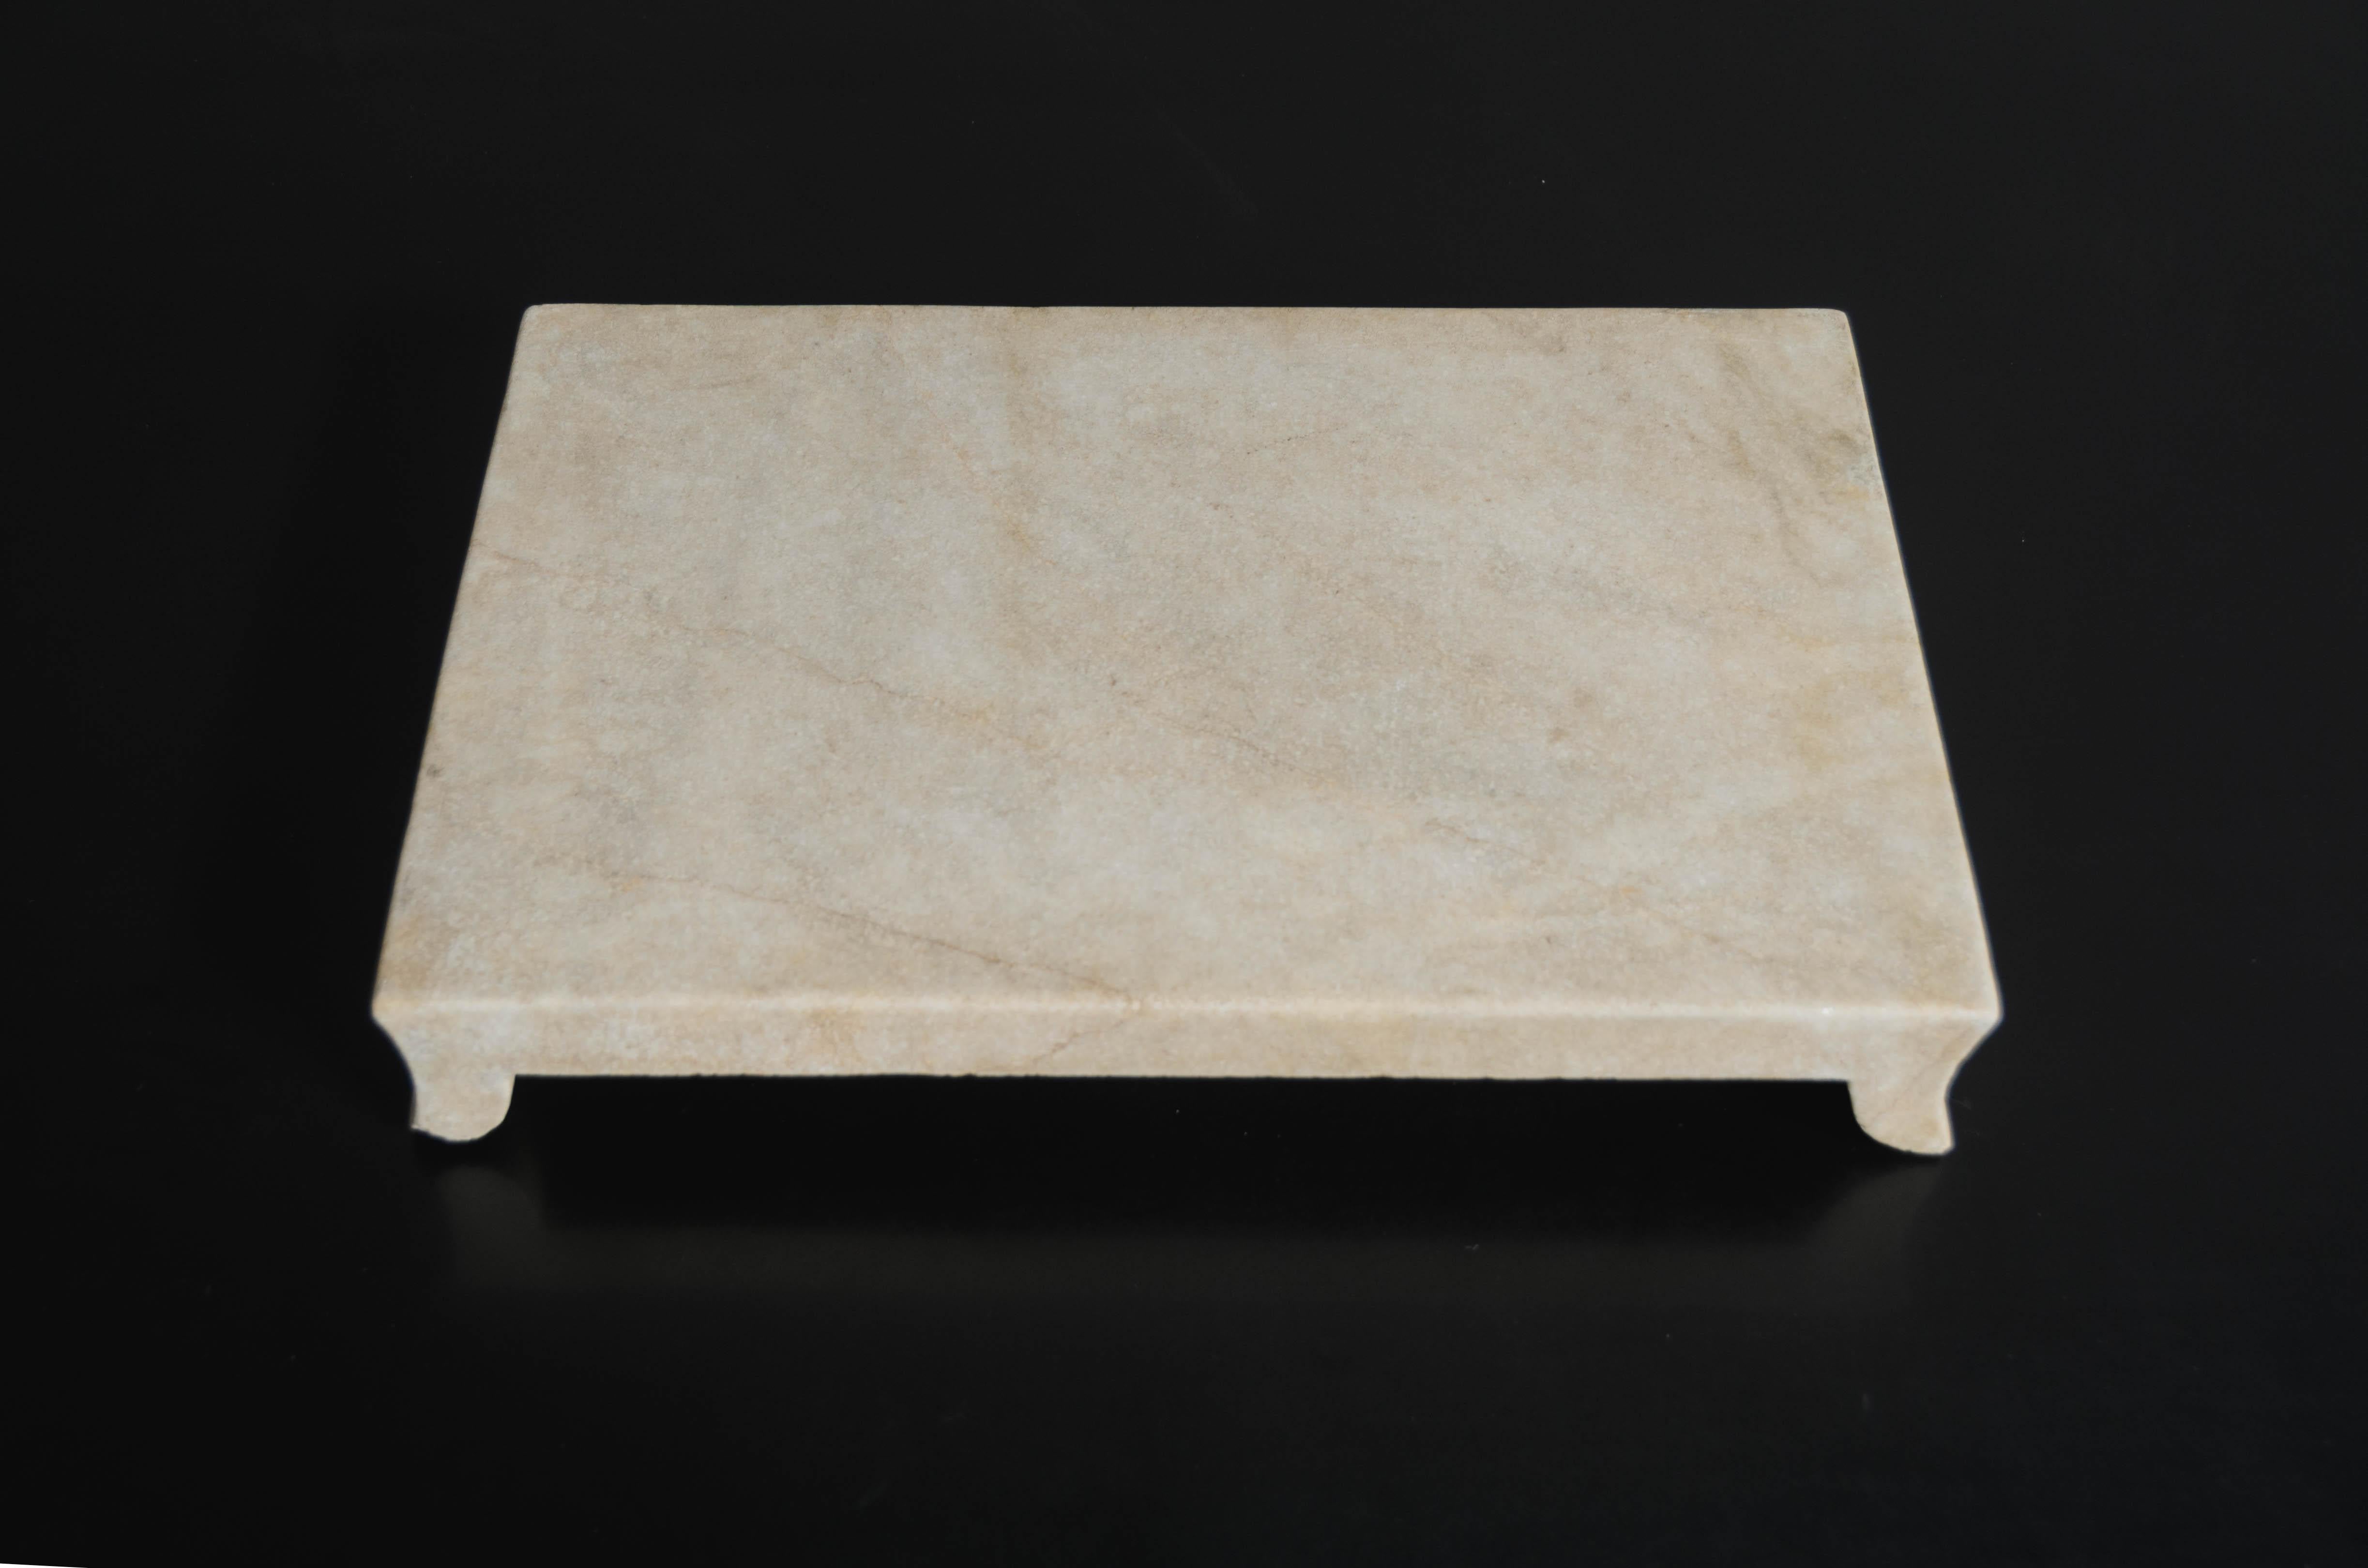 Erhöhtes Tablett aus Stein
Han Bai Yu Stein (Weißer Marmor)
Handgeschnitzt
Limitierte Auflage
Jeder einzelne Stein variiert in Einschlüssen und Farbe. Jedes Stück wird individuell angefertigt und ist einzigartig.
  